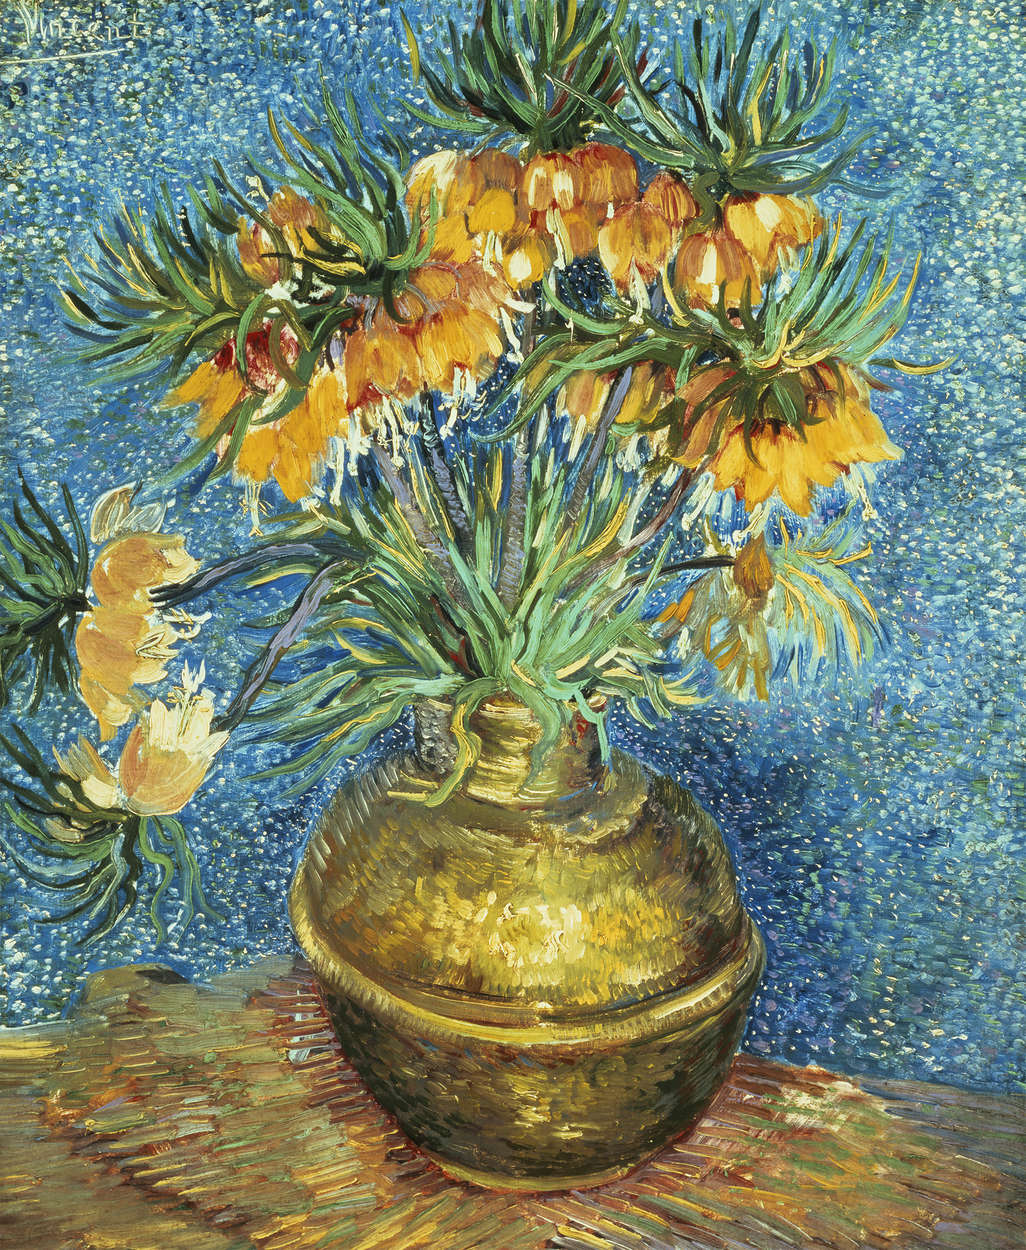             Fototapete "Fritillaria, Kaiserkrone in einer Kupfervase " von Vincent van Gogh
        